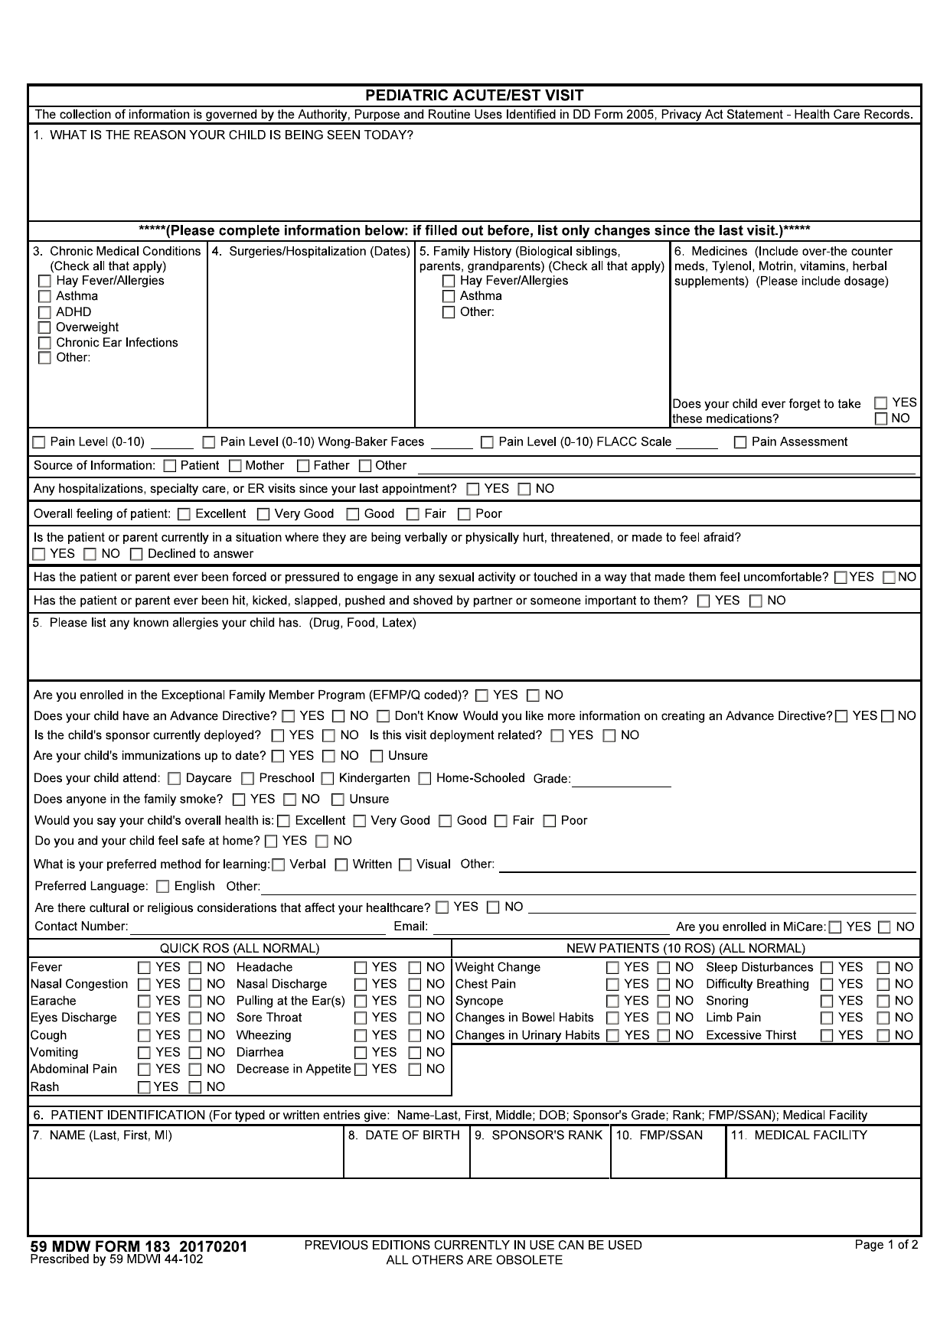 59 MDW Form 183 Pediatric Acute / Est Visit, Page 1